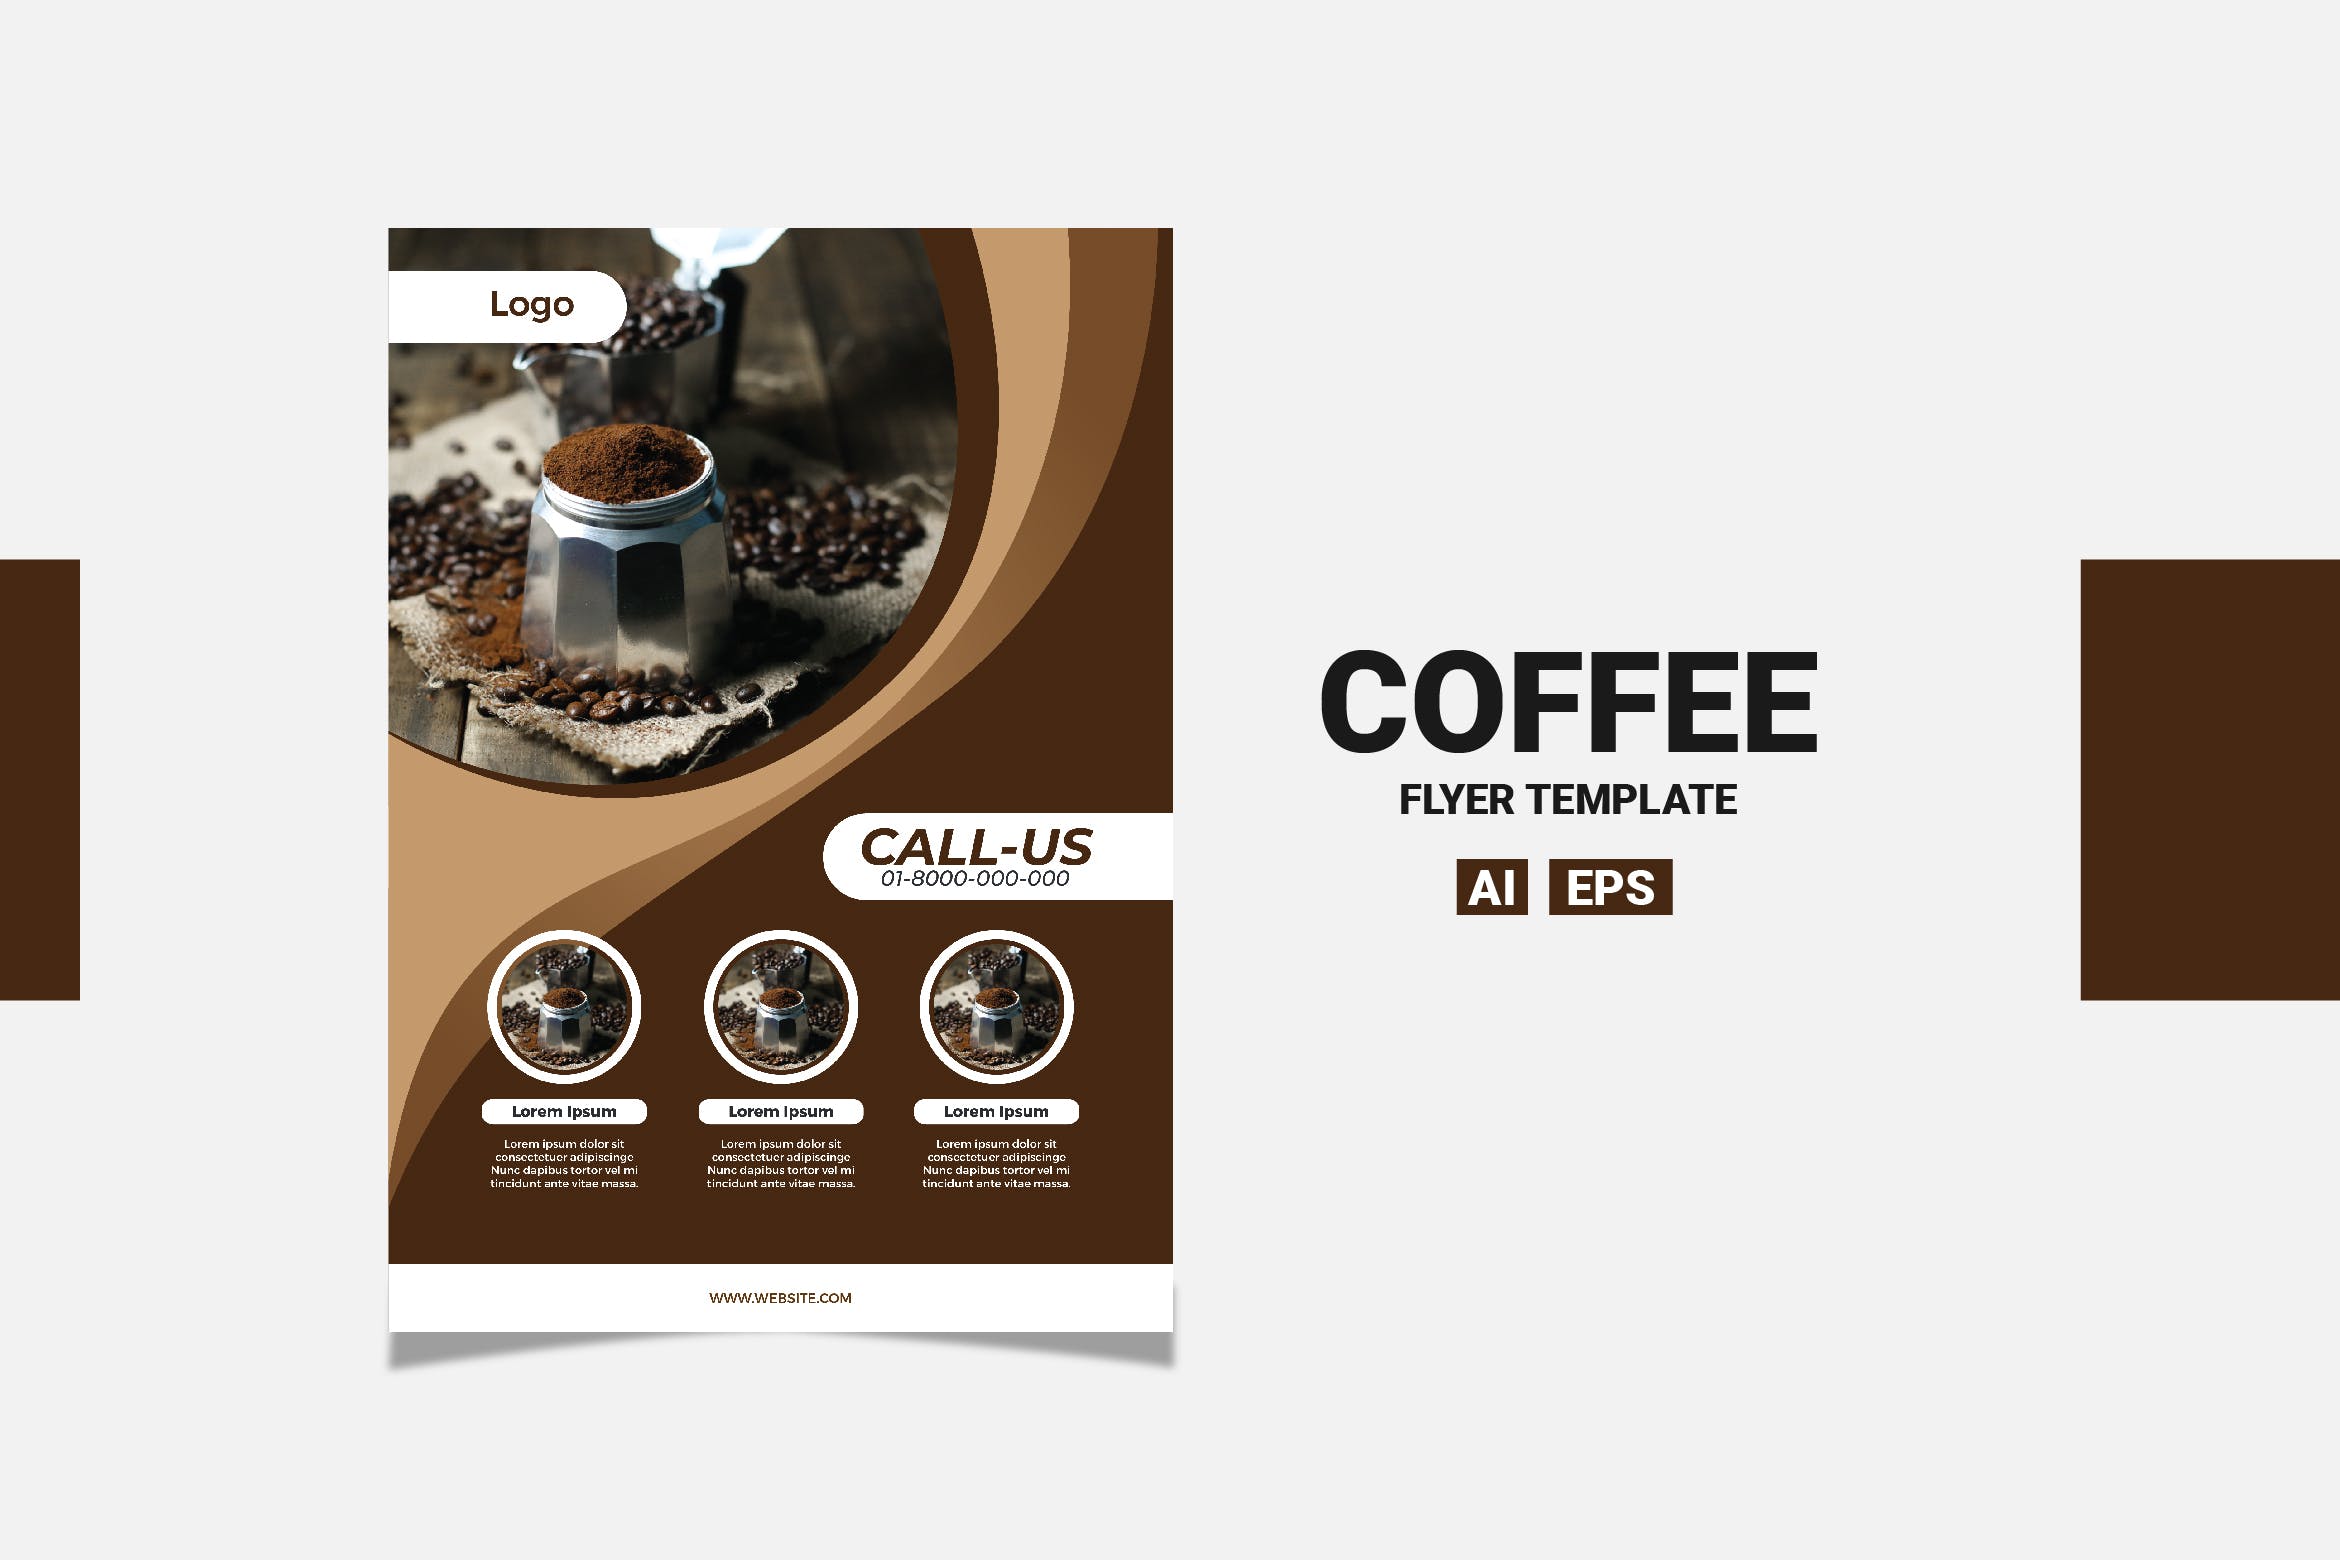 咖啡品牌/咖啡店推广广告传单设计模板 Brown Coffee Flyer插图